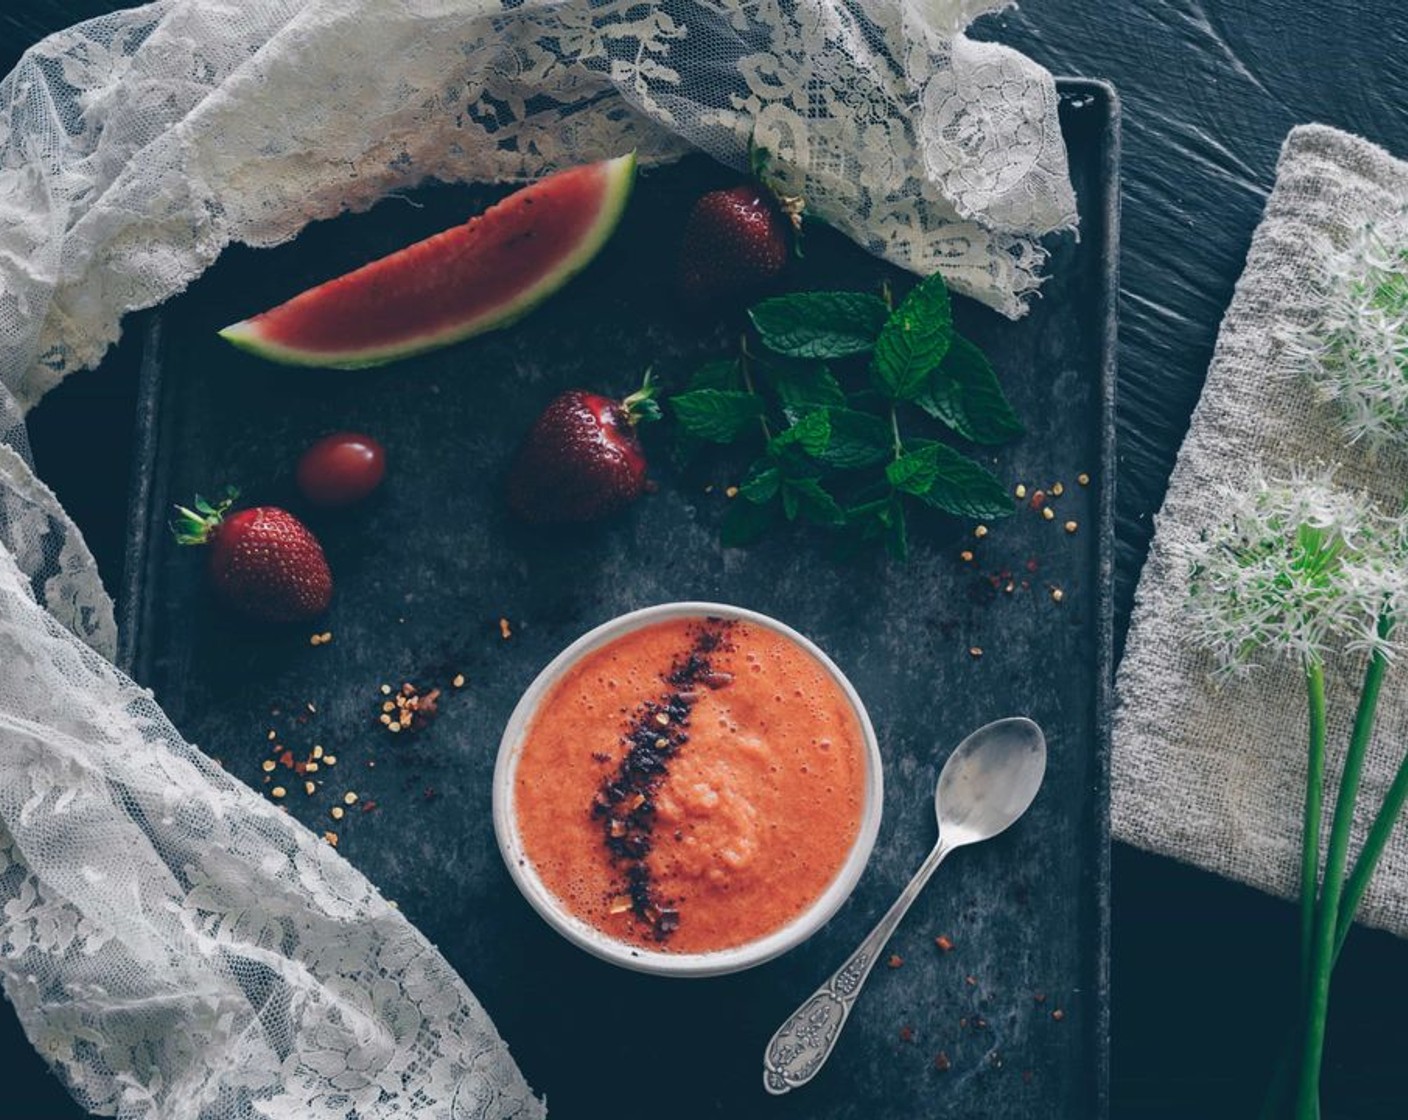 Kalte Suppe - Gazpacho mit Wassermelone und Erdbeeren